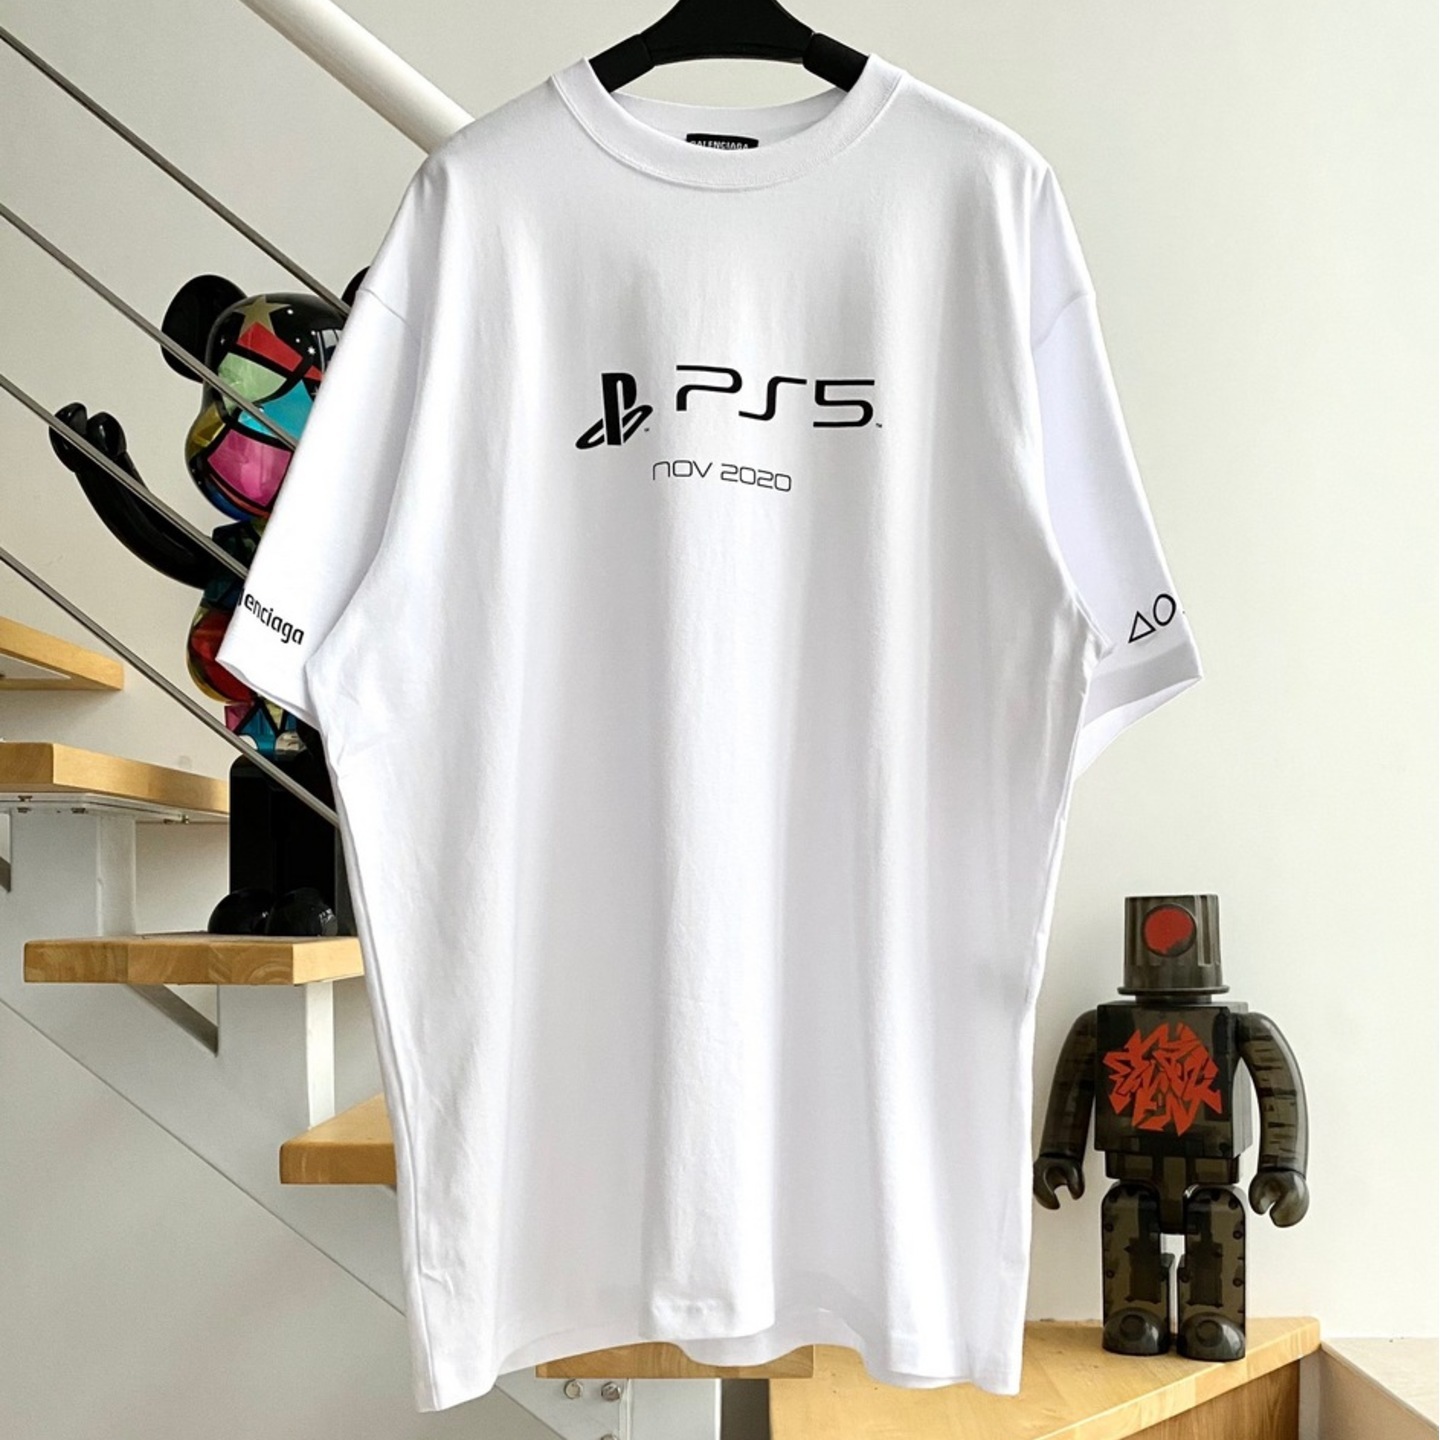 Balenciaga's PlayStation 5 T-shirt